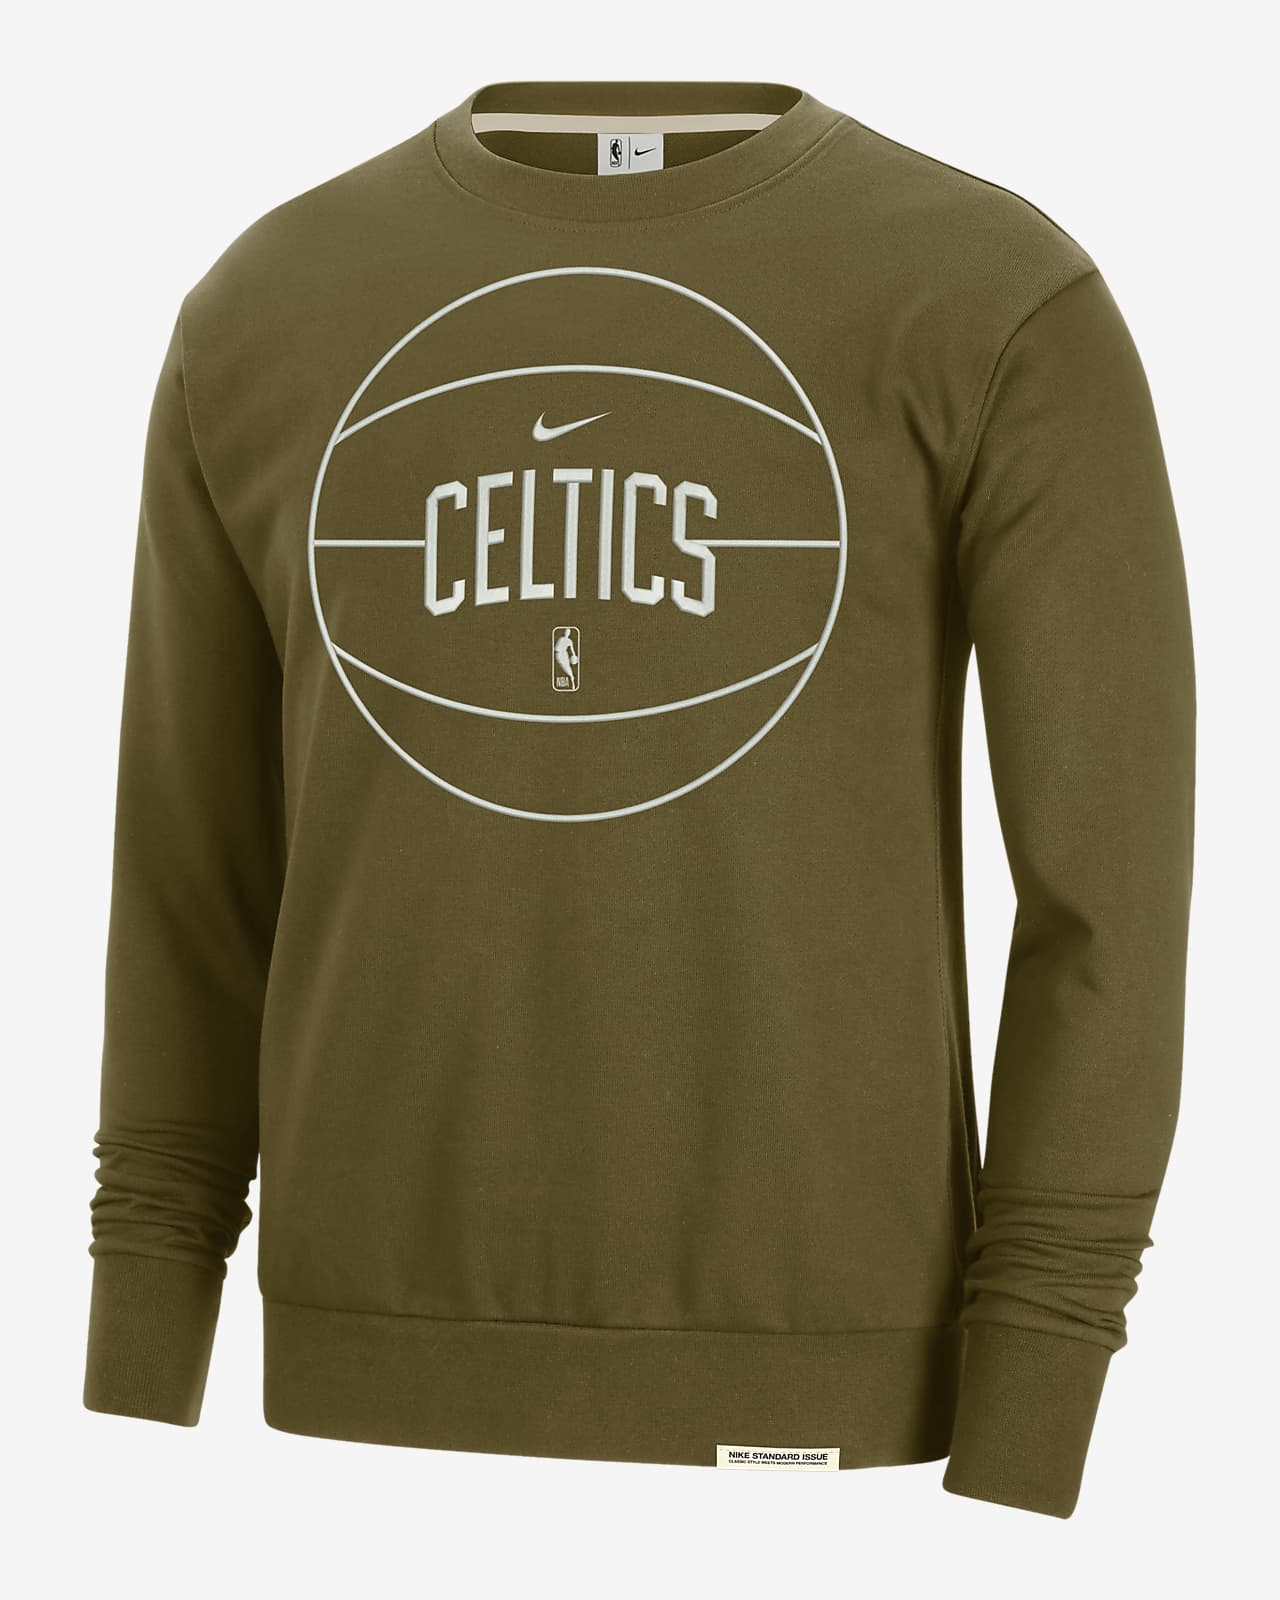 Sudaera Nike Dri-FIT de la NBA para hombres Boston Celtics Standard Issue